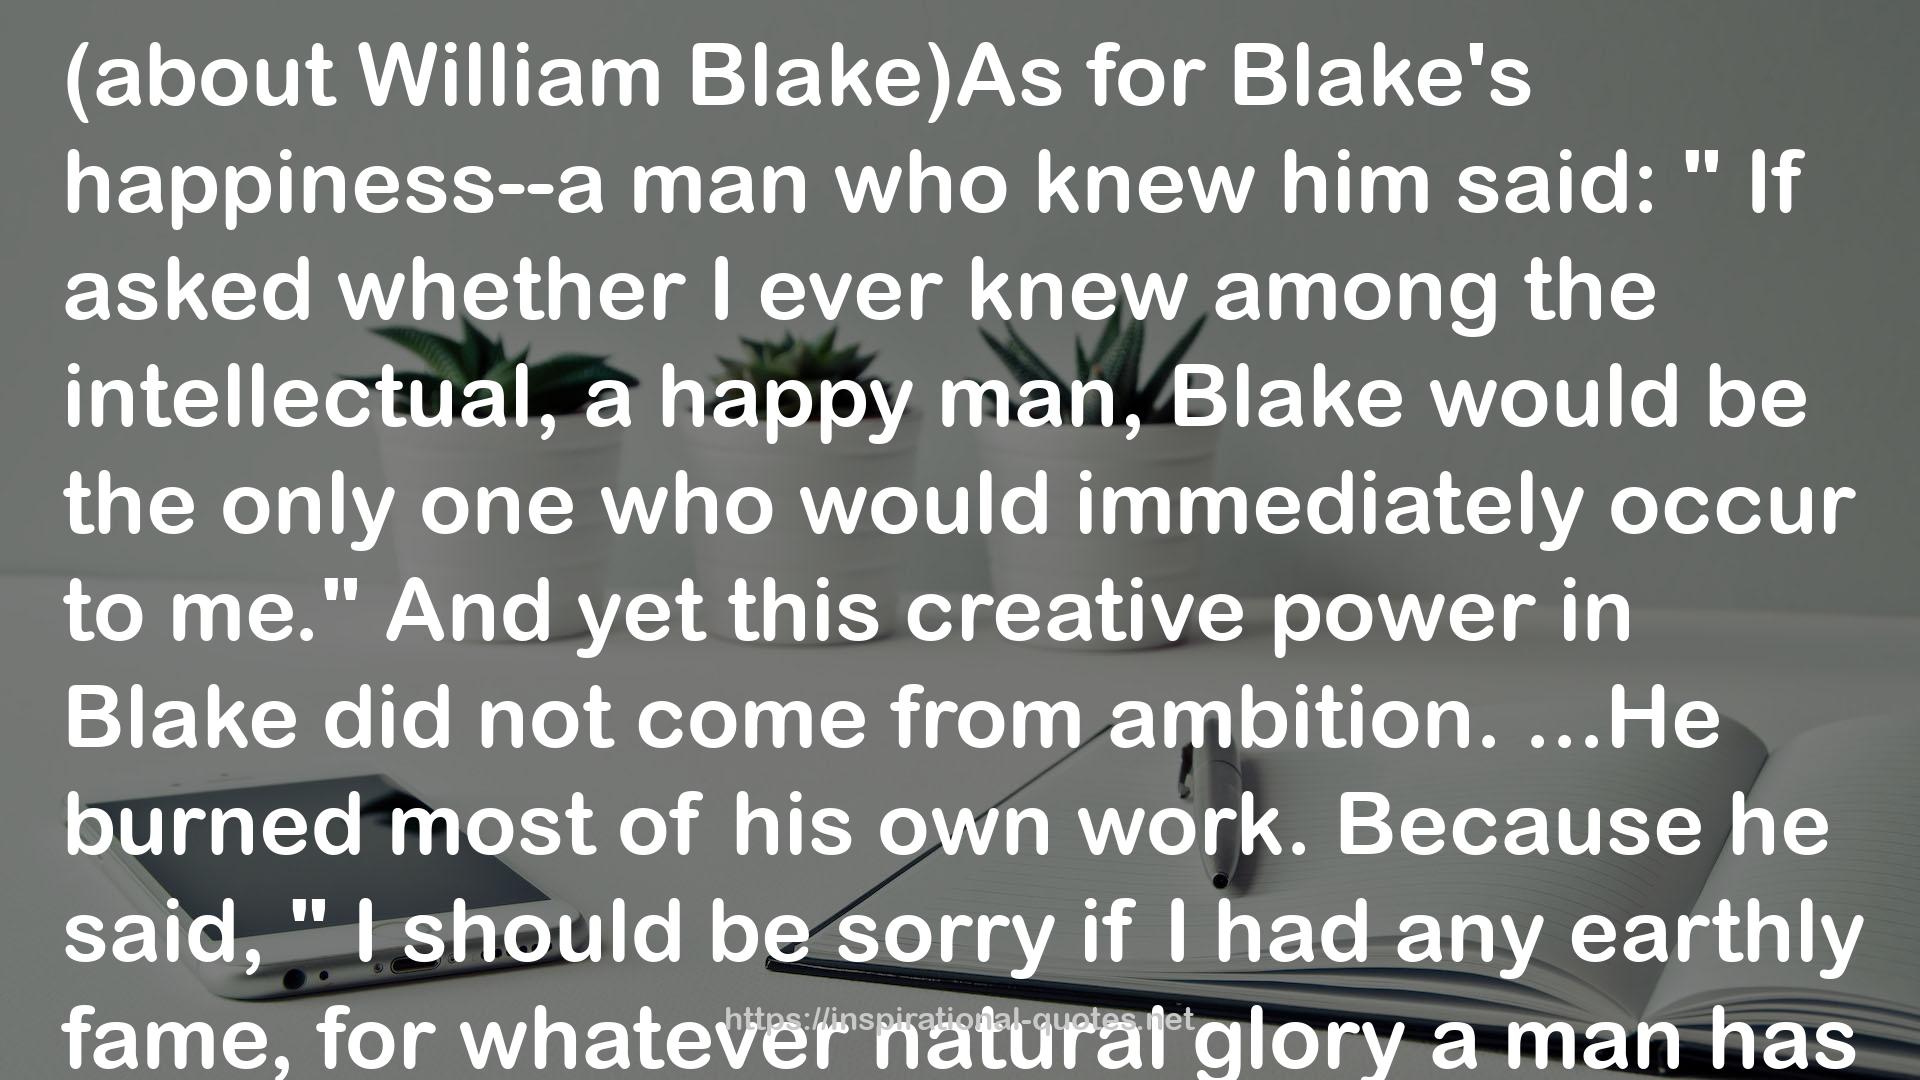 William Blake)As  QUOTES